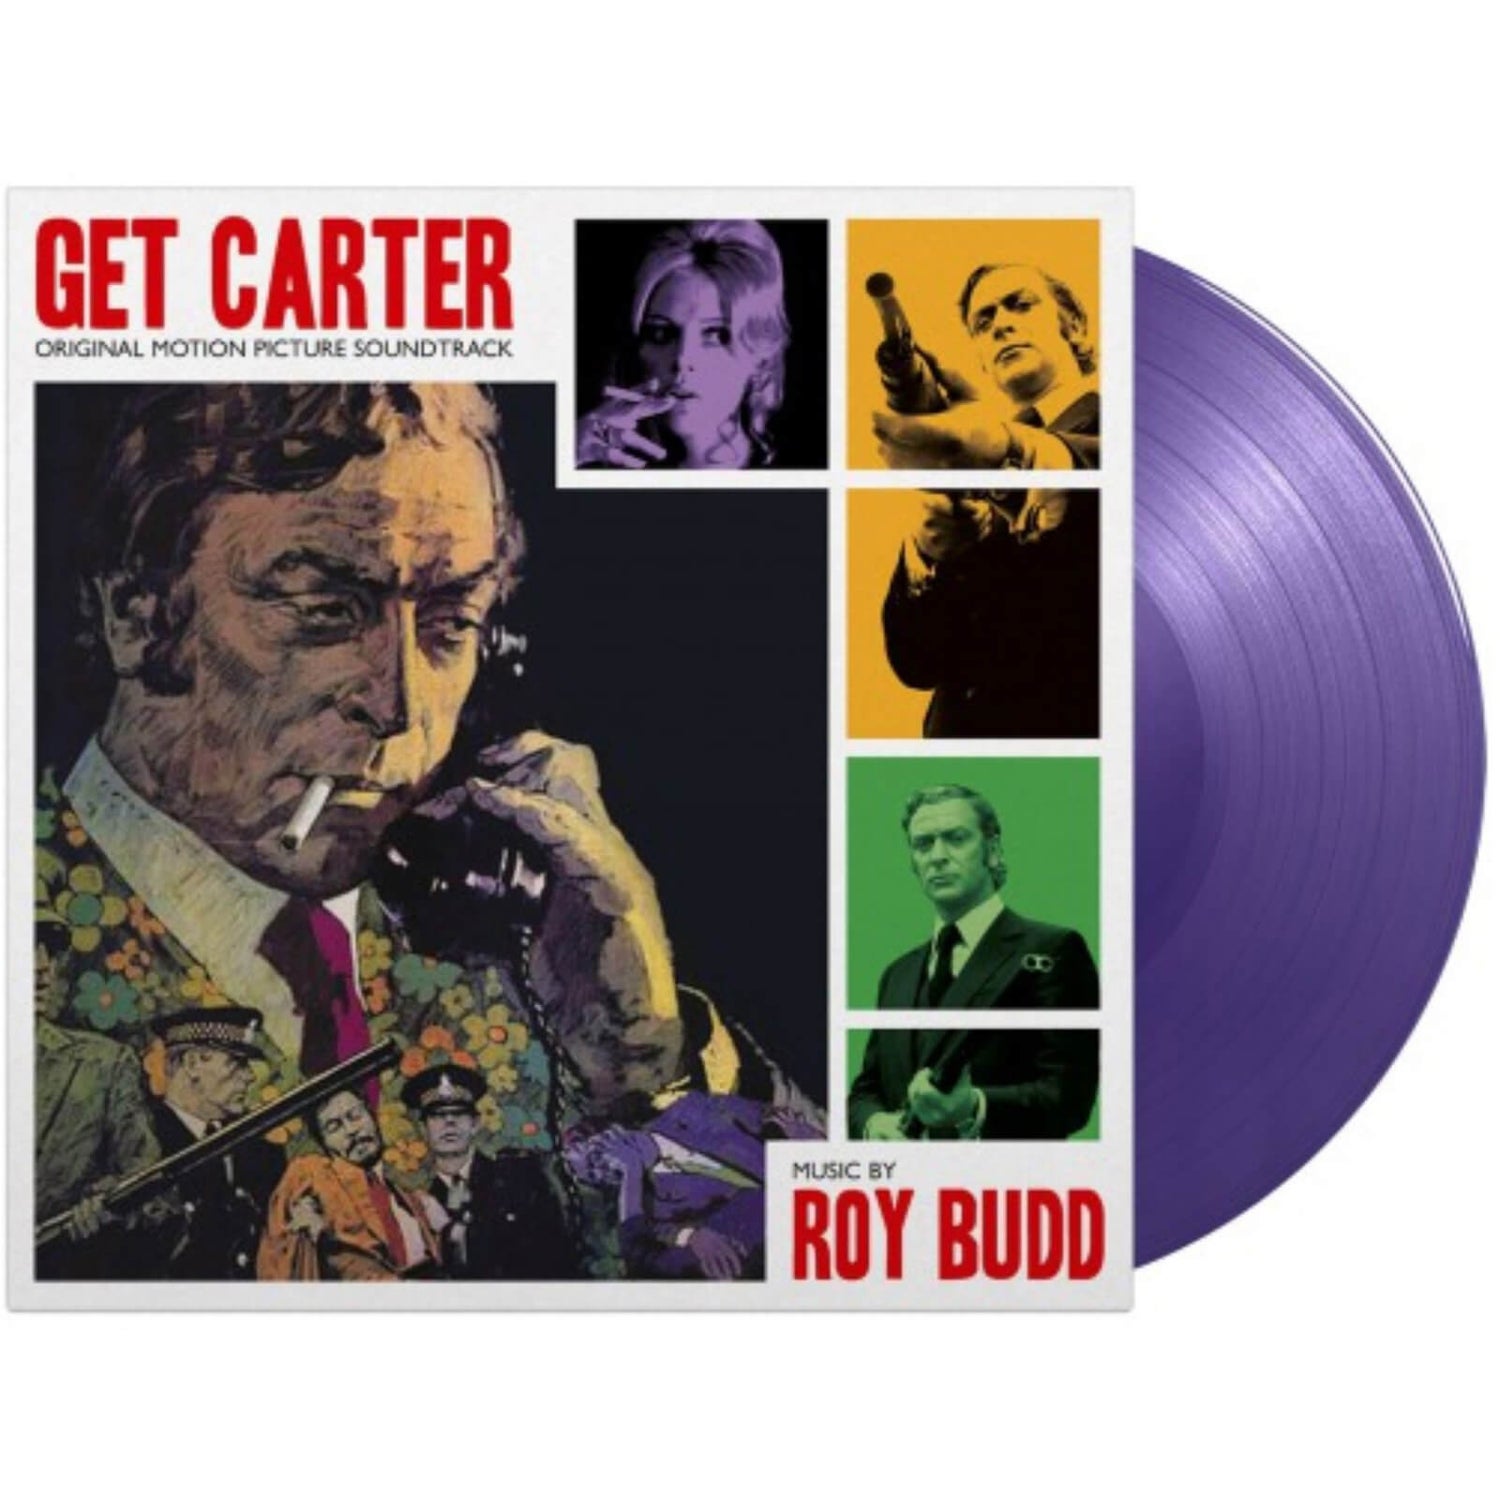 Get Carter (Original Motion Picture Soundtrack) 180g Vinyl (Purple)